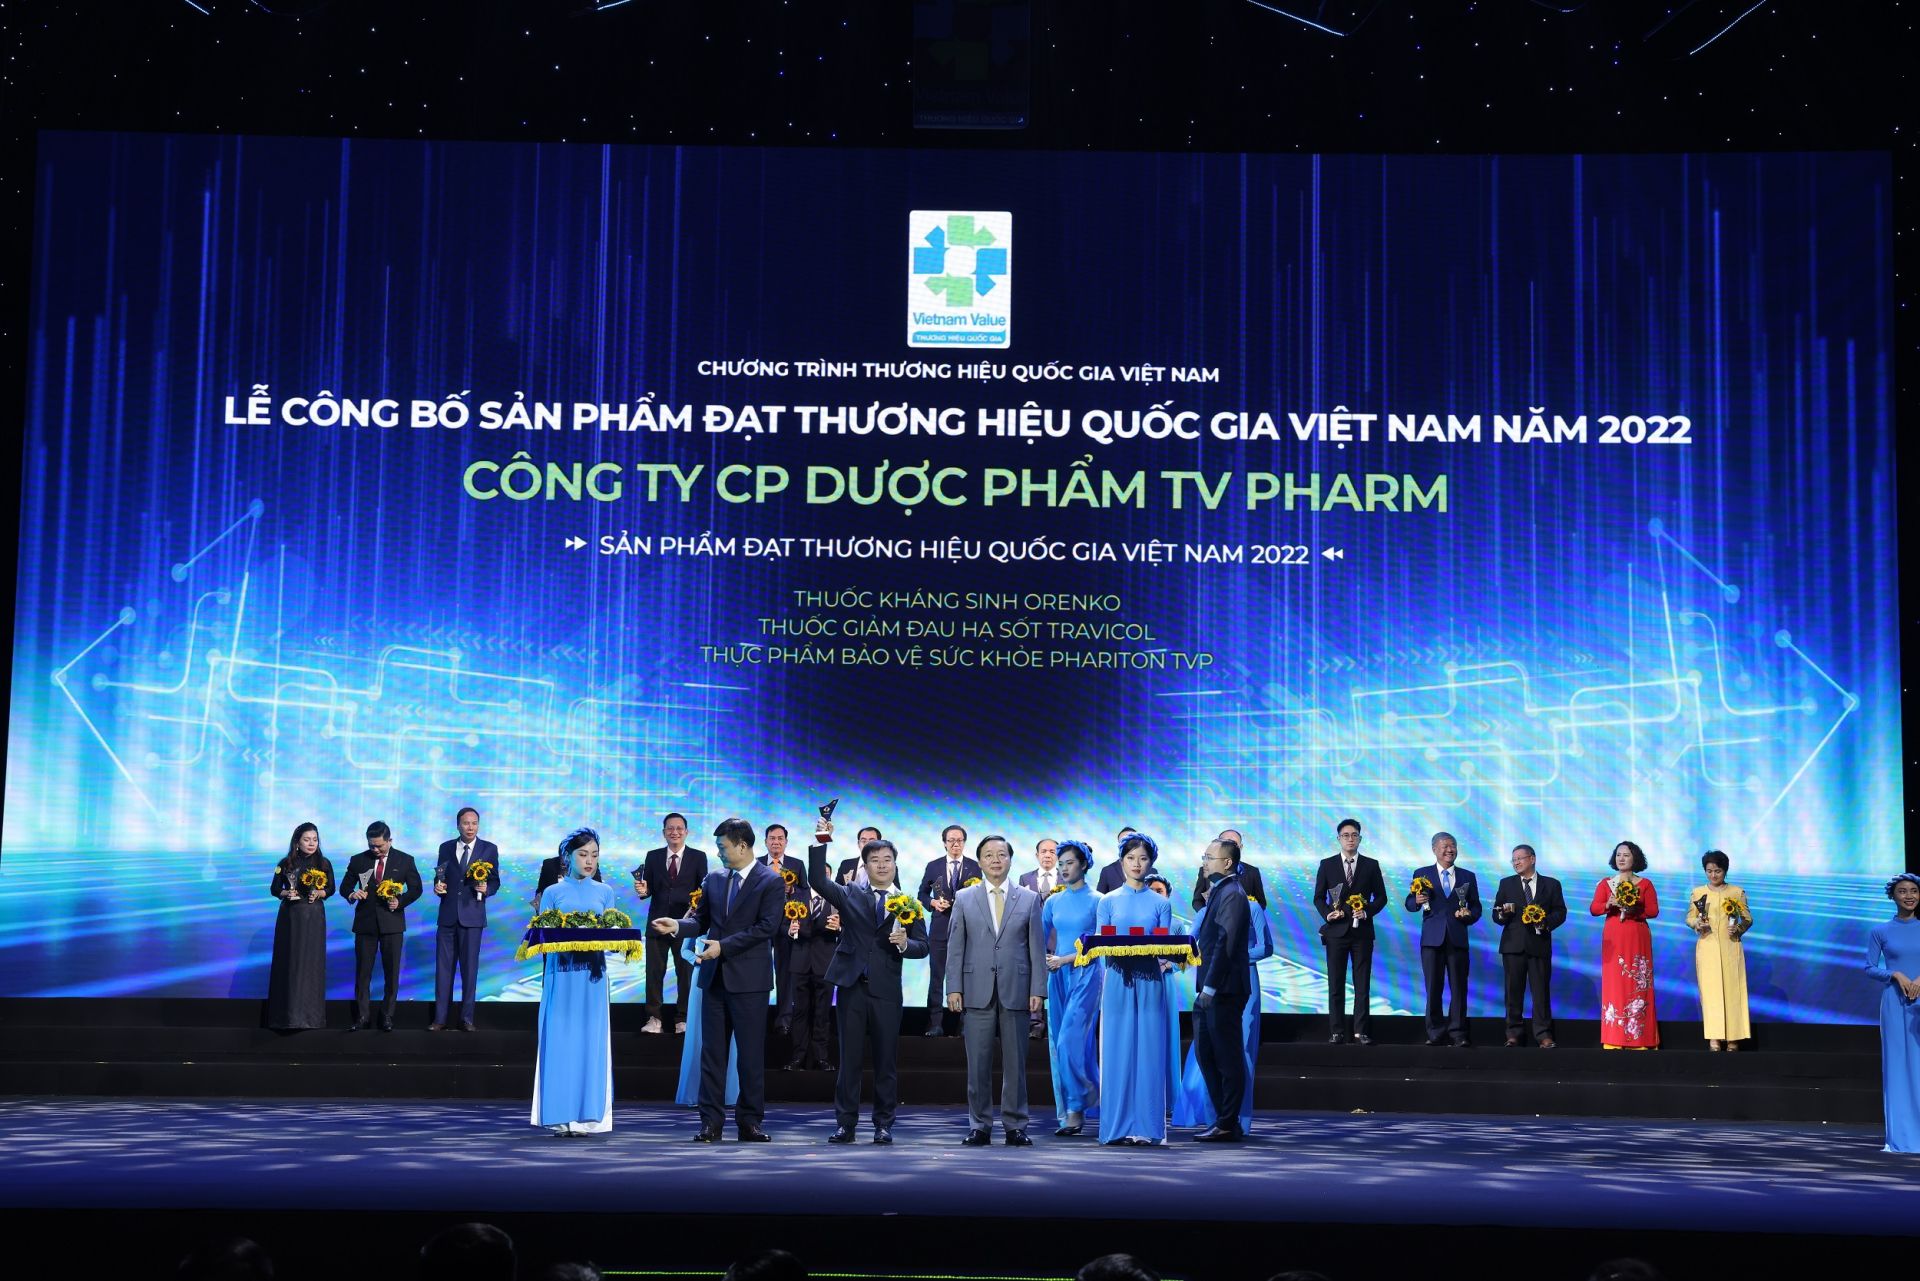 Phariton TVP tự hào Thương hiệu Quốc gia Việt Nam, khẳng định chất lượng vì sức khỏe cộng đồng